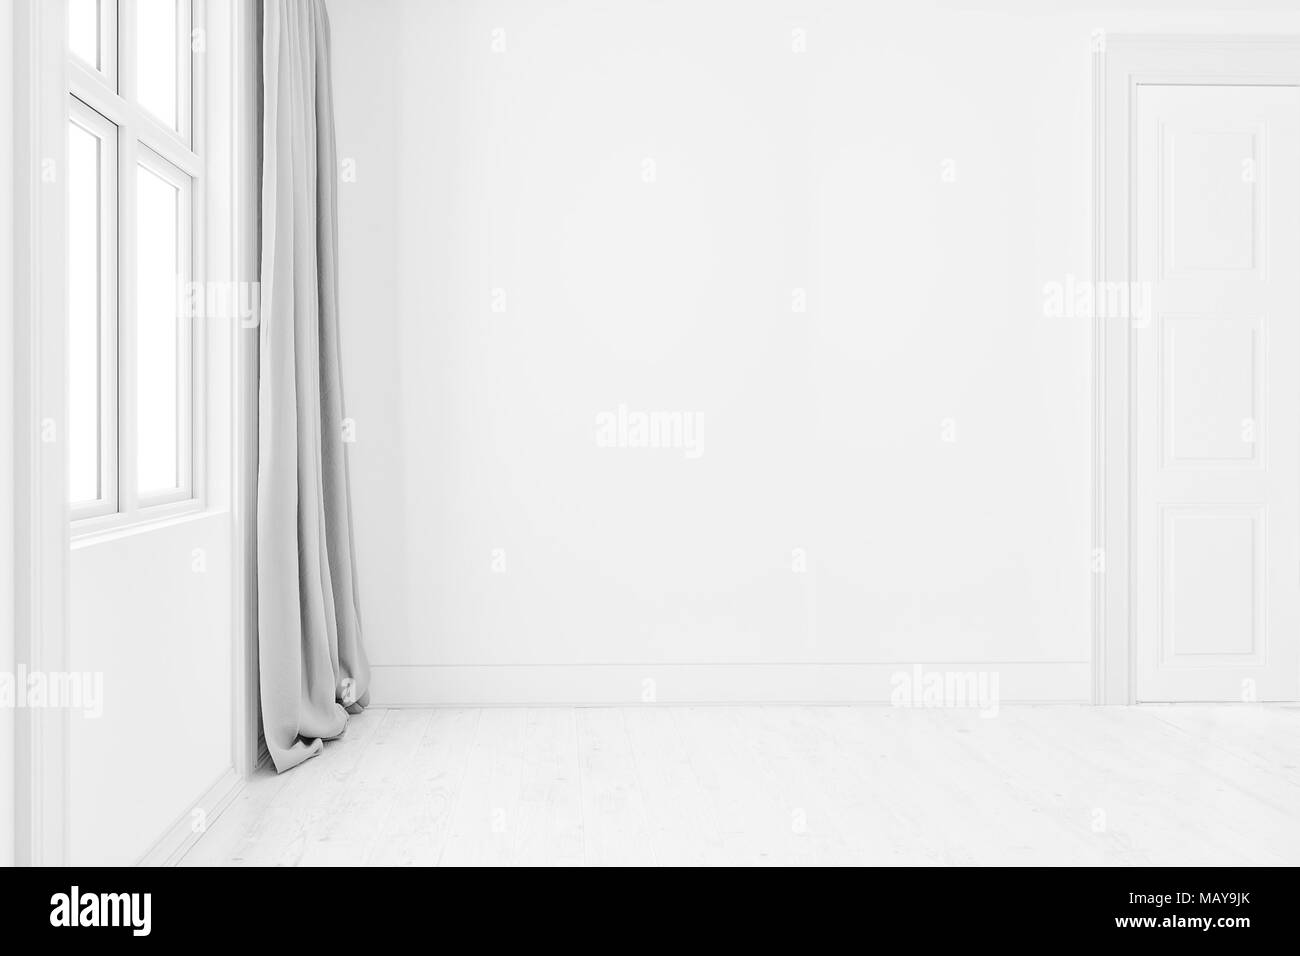 Vide intérieur propre arrière-plan de la salle vide, murs blancs et parquet en bois blanc,contemporain le rendu 3D Banque D'Images